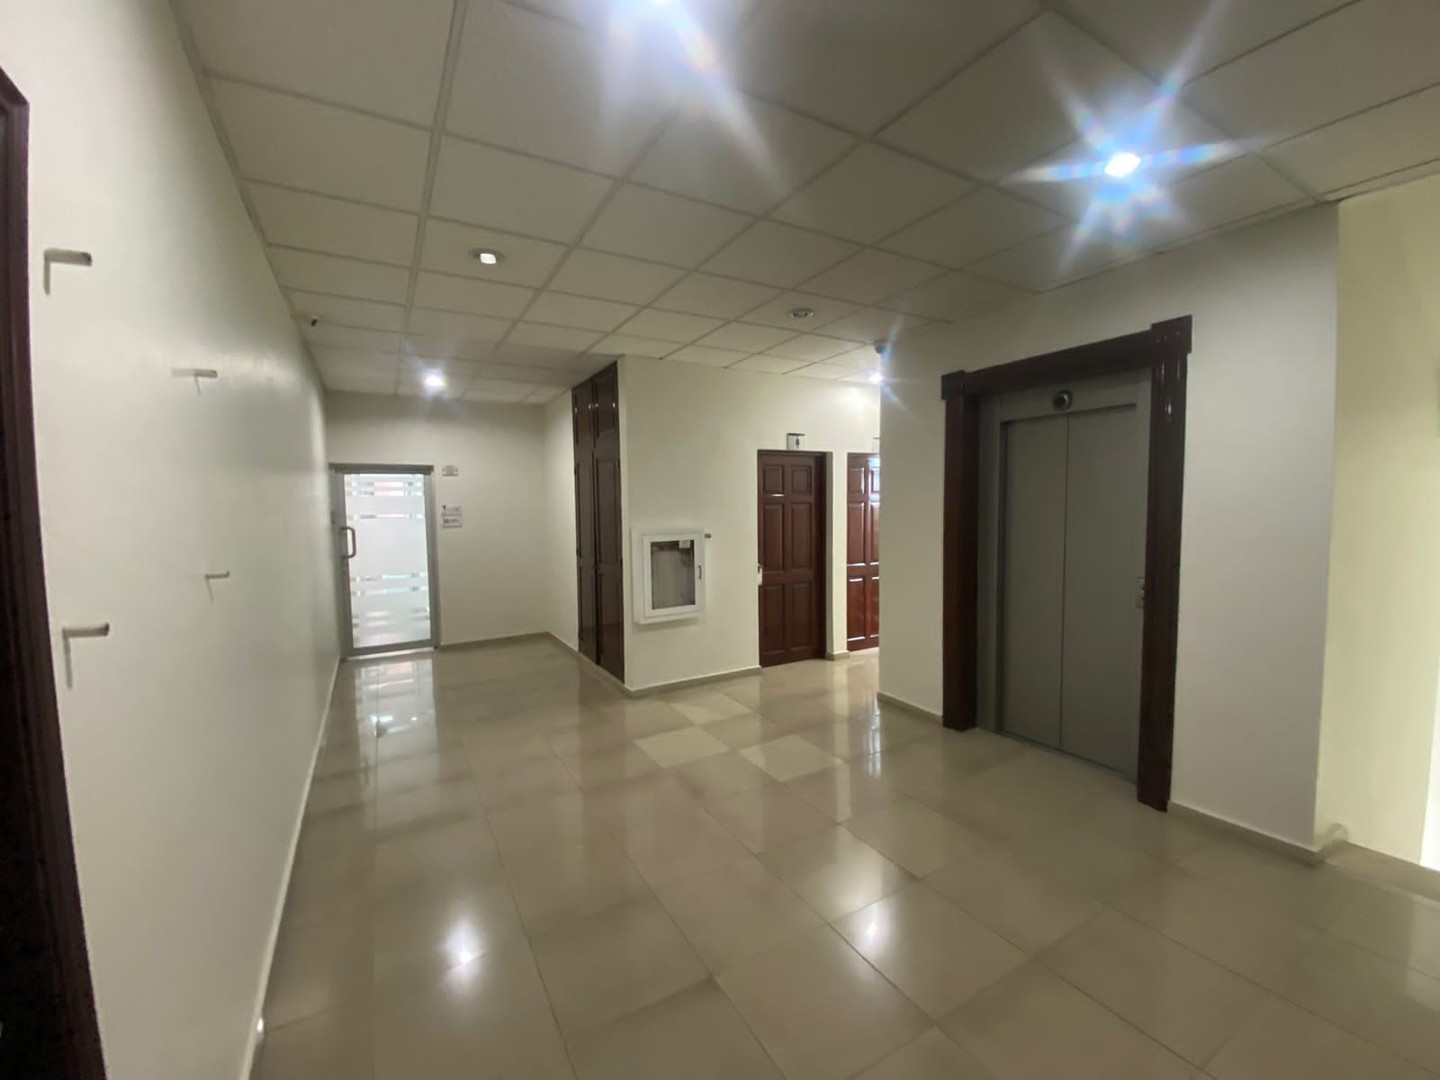 oficinas y locales comerciales - Paraiso oficina 85m2 4to piso en edificio corporativo 3